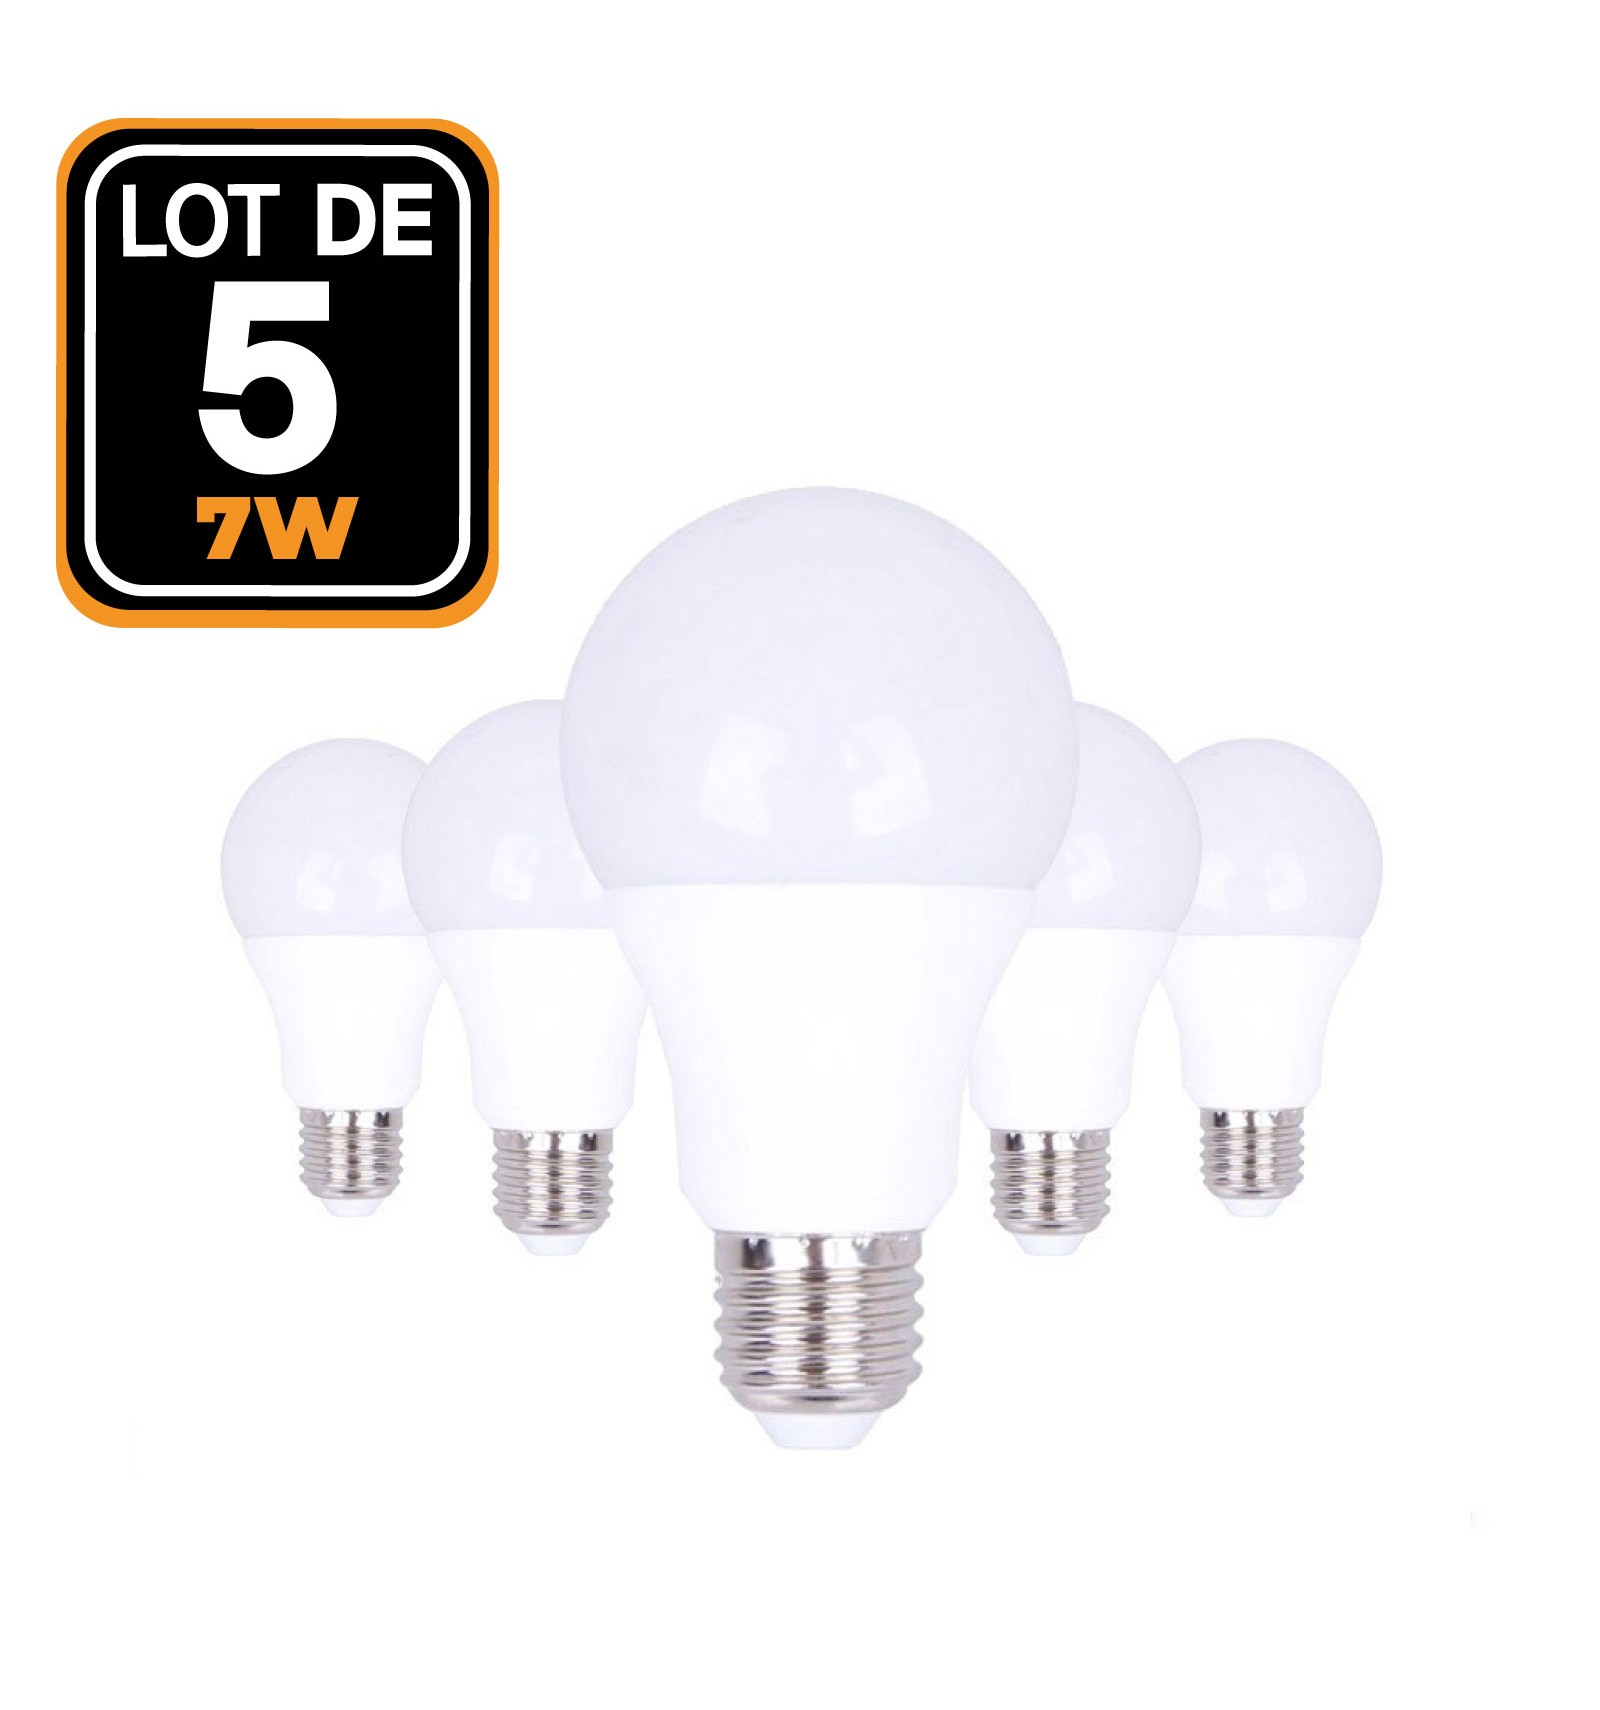 Lot de 10 Ampoules LED E27 15W Blanc Chaud 2700K - Projecteur LED Shop